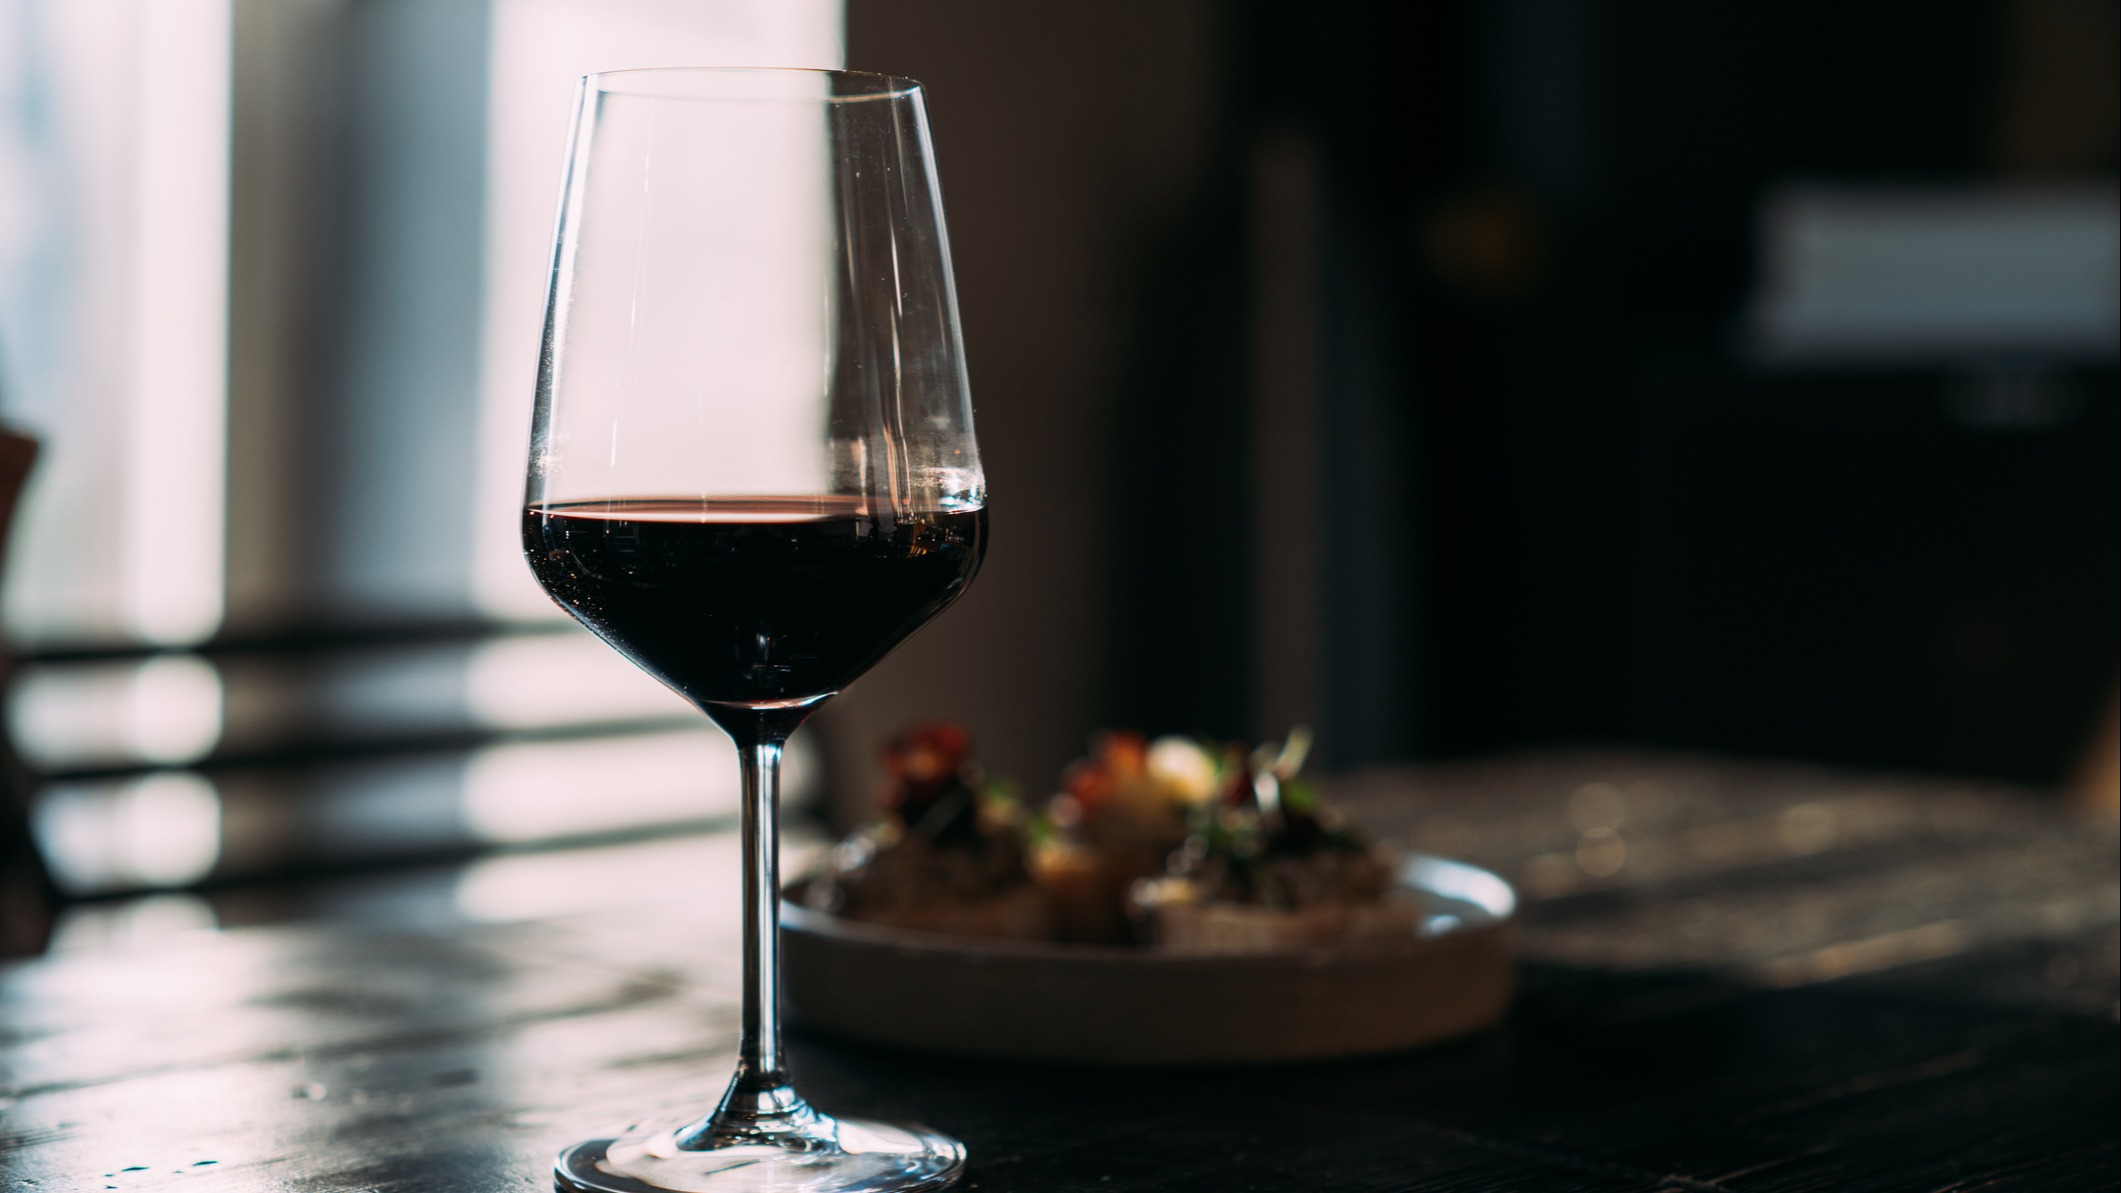 Et glass rødvin ved siden av en tallerken ved et vindu.